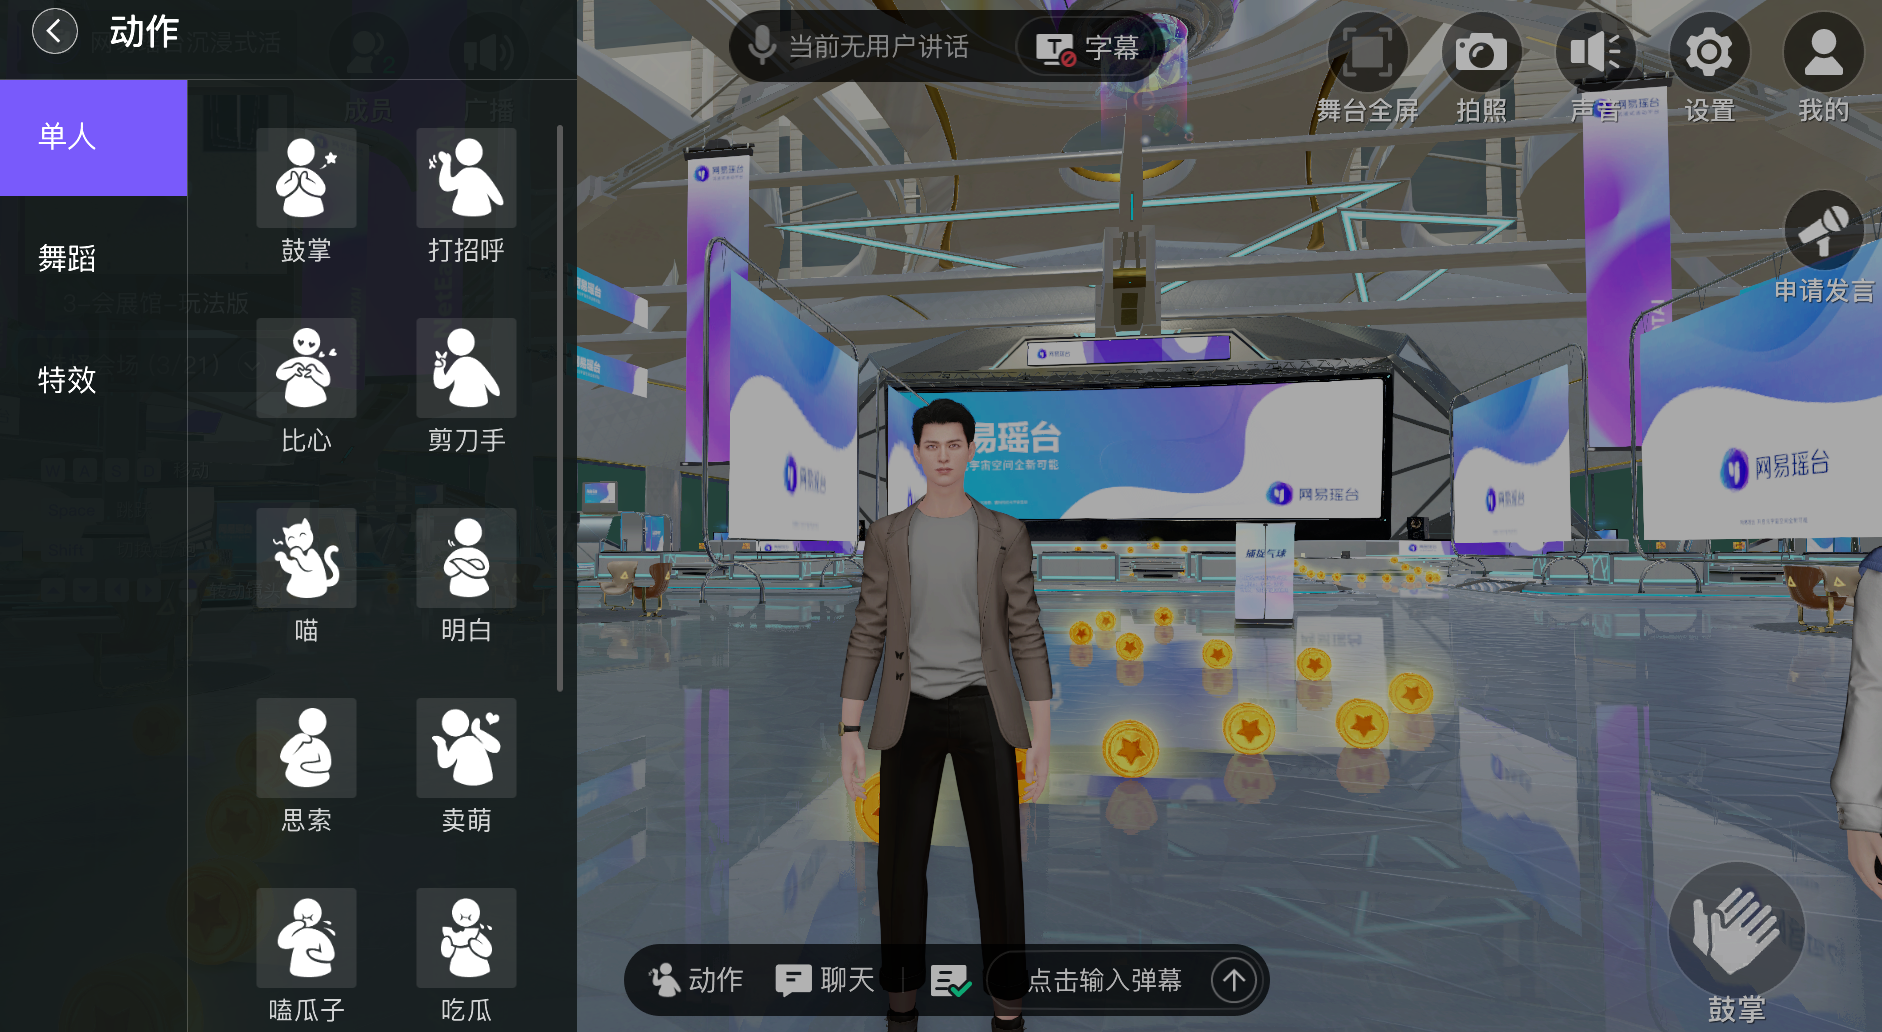 图片展示了一个三维虚拟环境，中间站着一位穿着正装的虚拟人物，周围有金币和菜单界面。